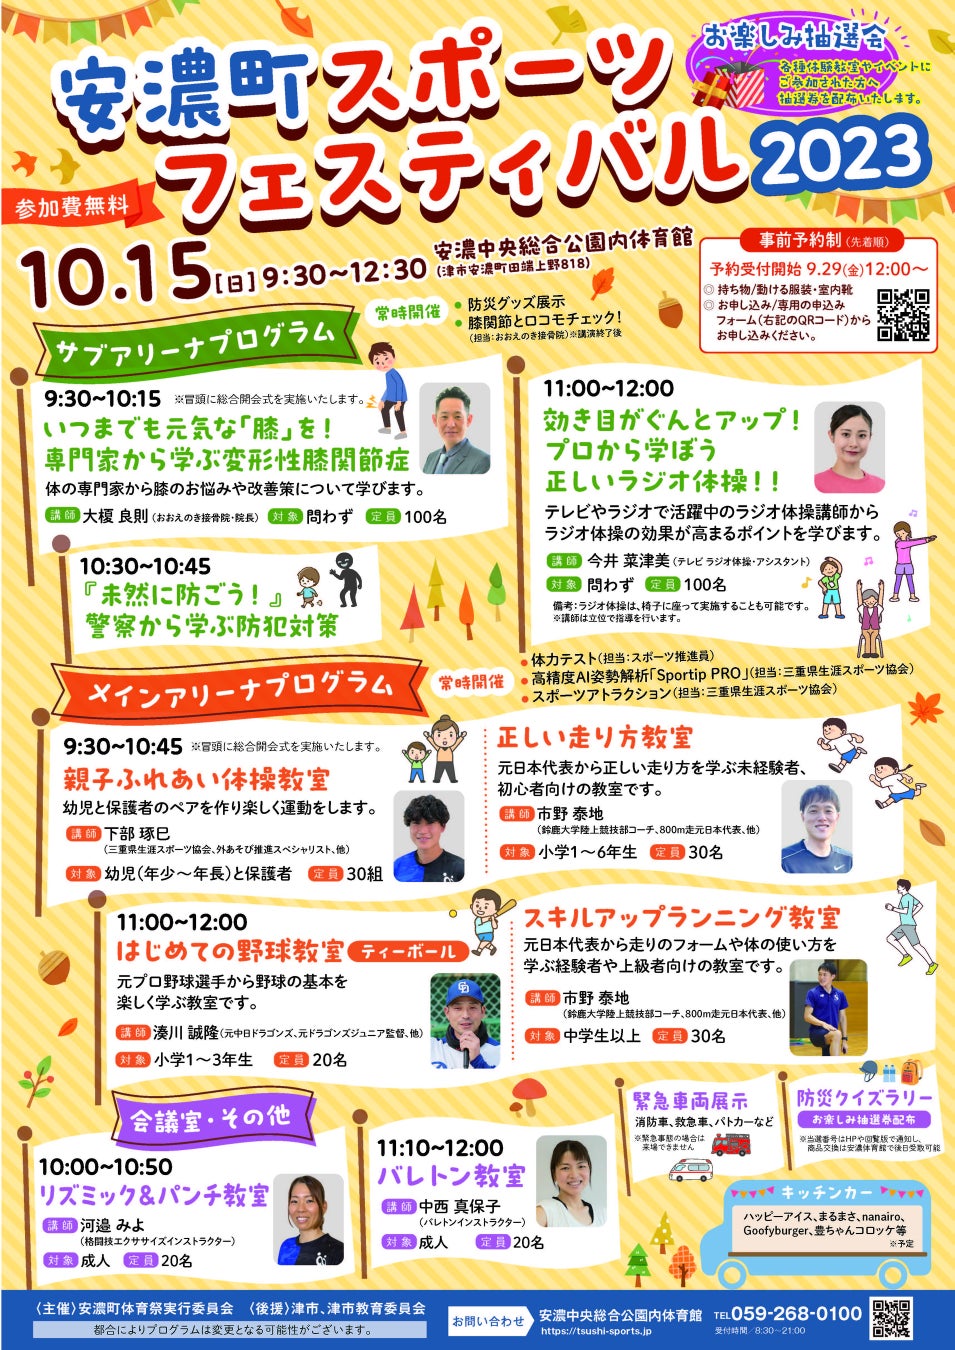 【10/15 津市安濃町スポーツの祭典】「安濃町スポーツフェスティバル2023」を今年も開催